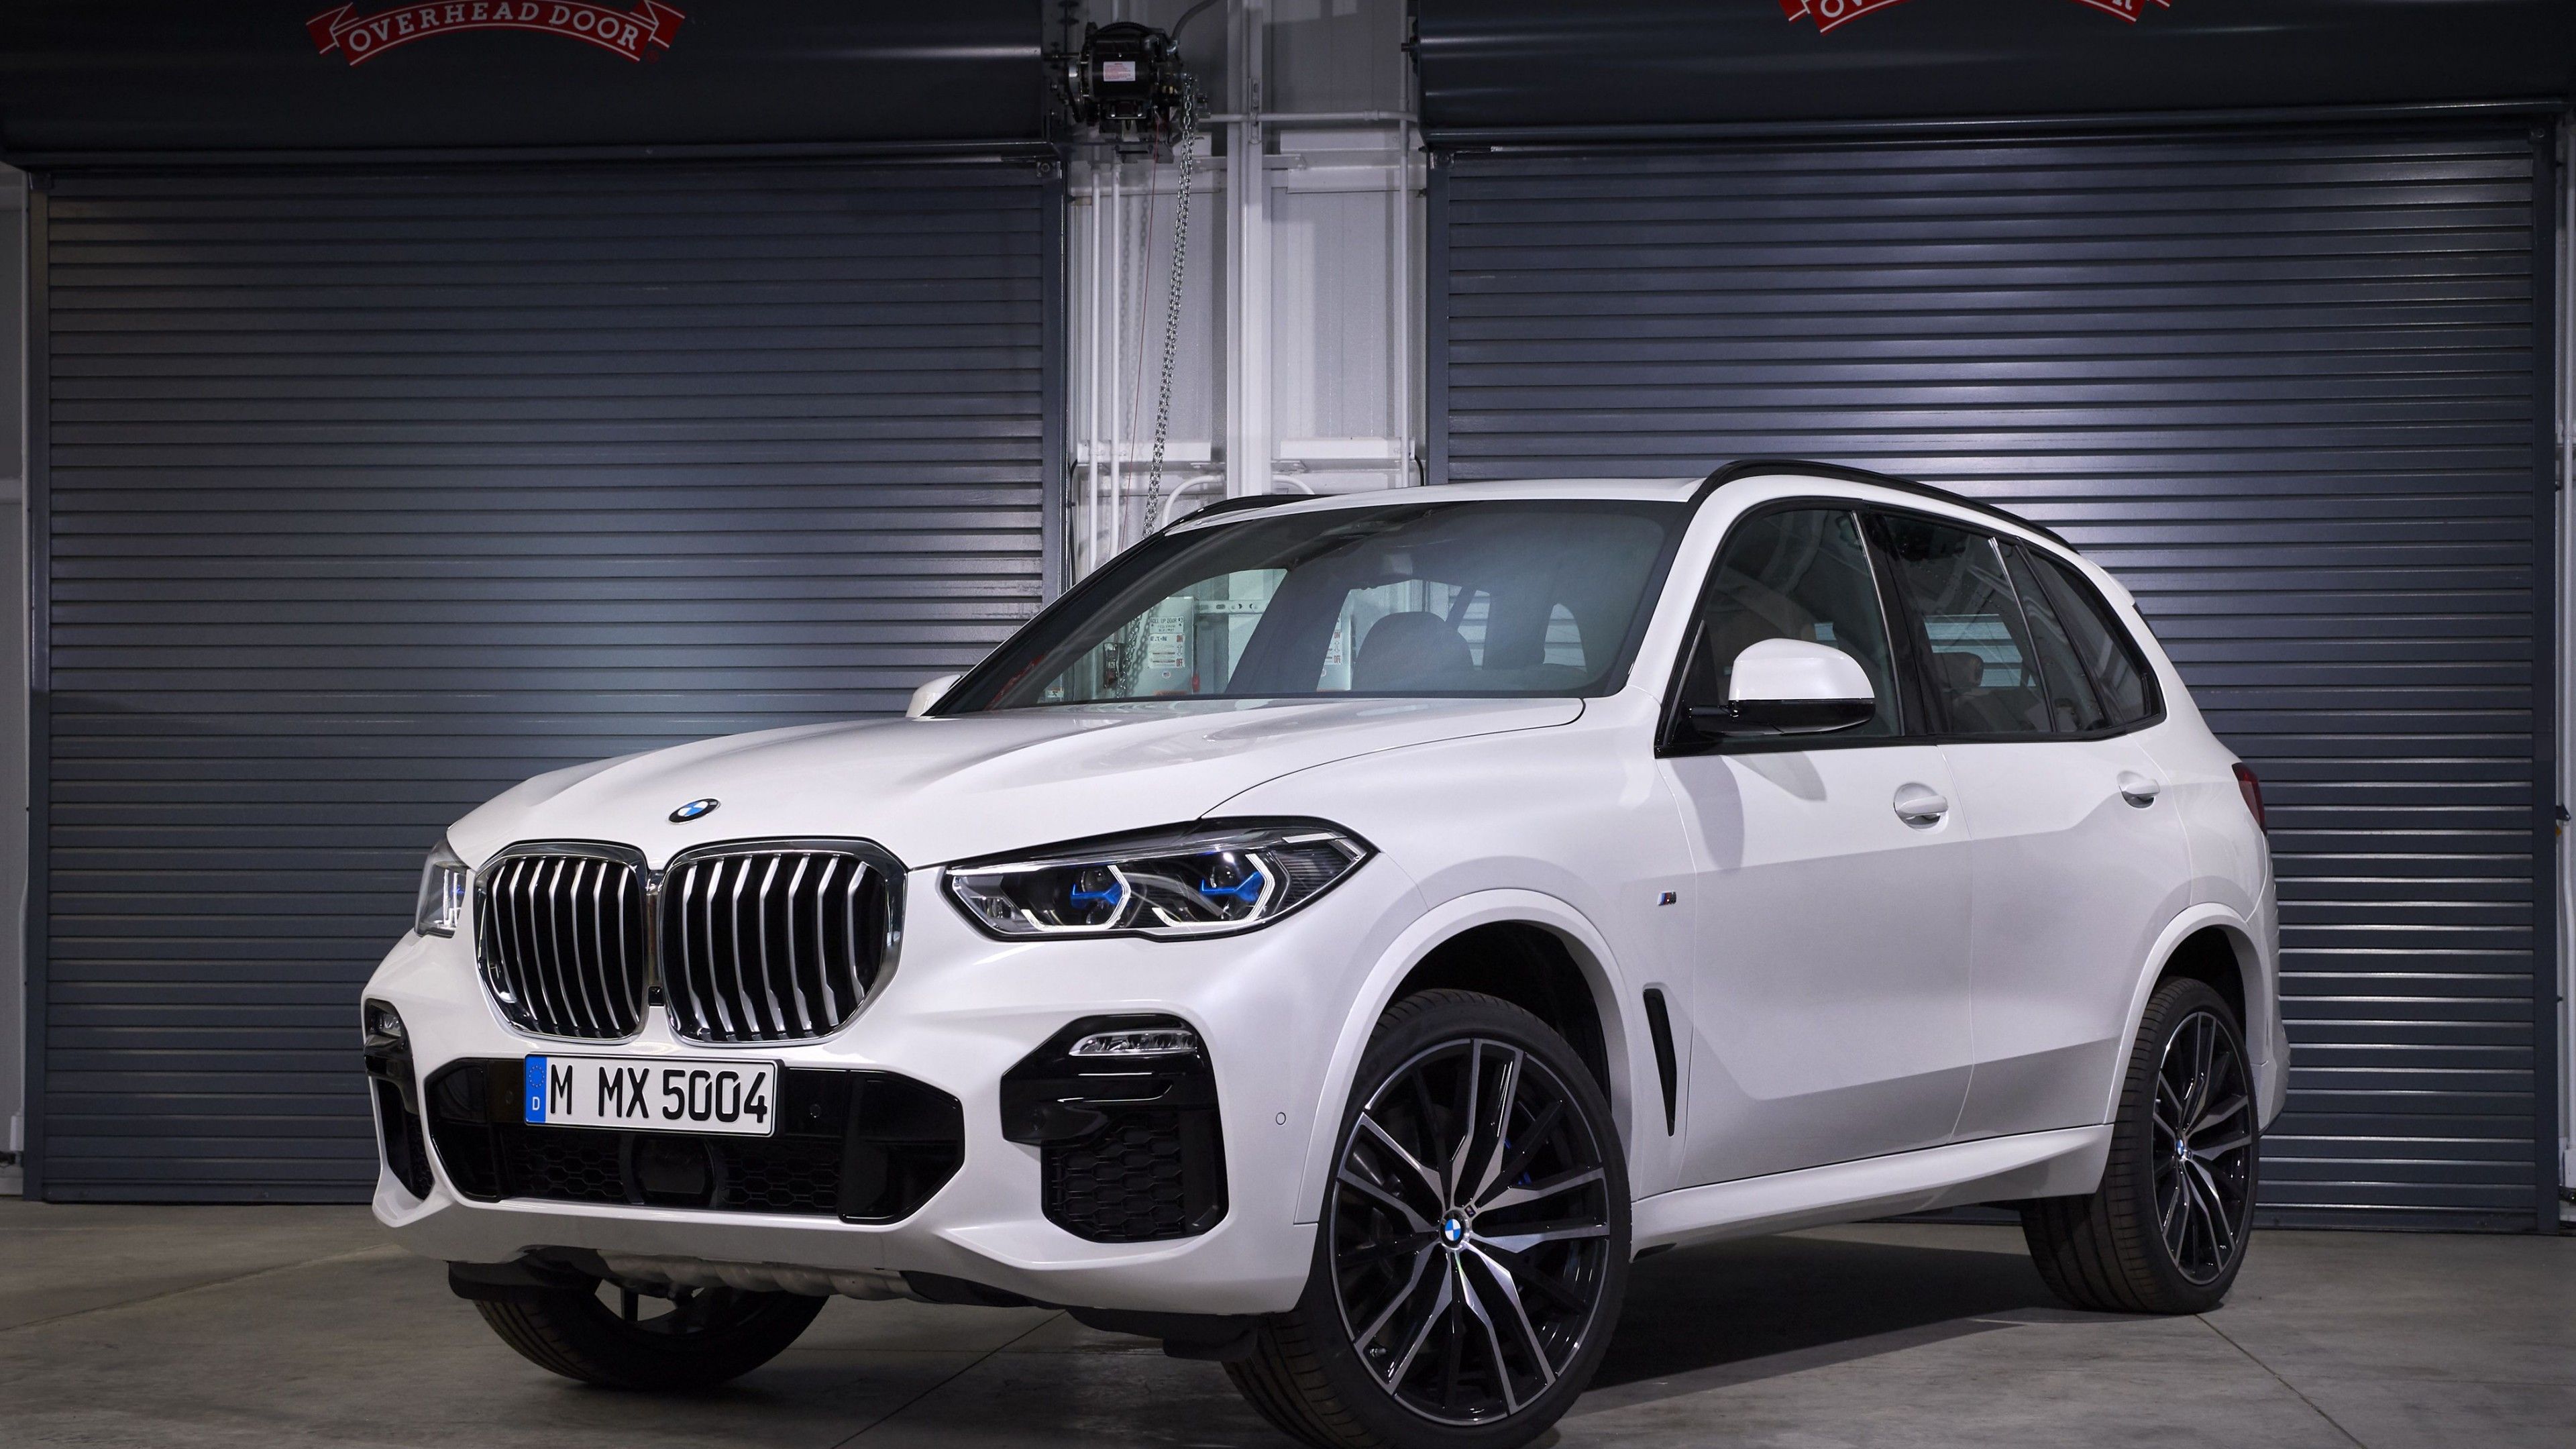 Wallpaper BMW X SUV, 2019 Cars, 4K, Cars & Bikes